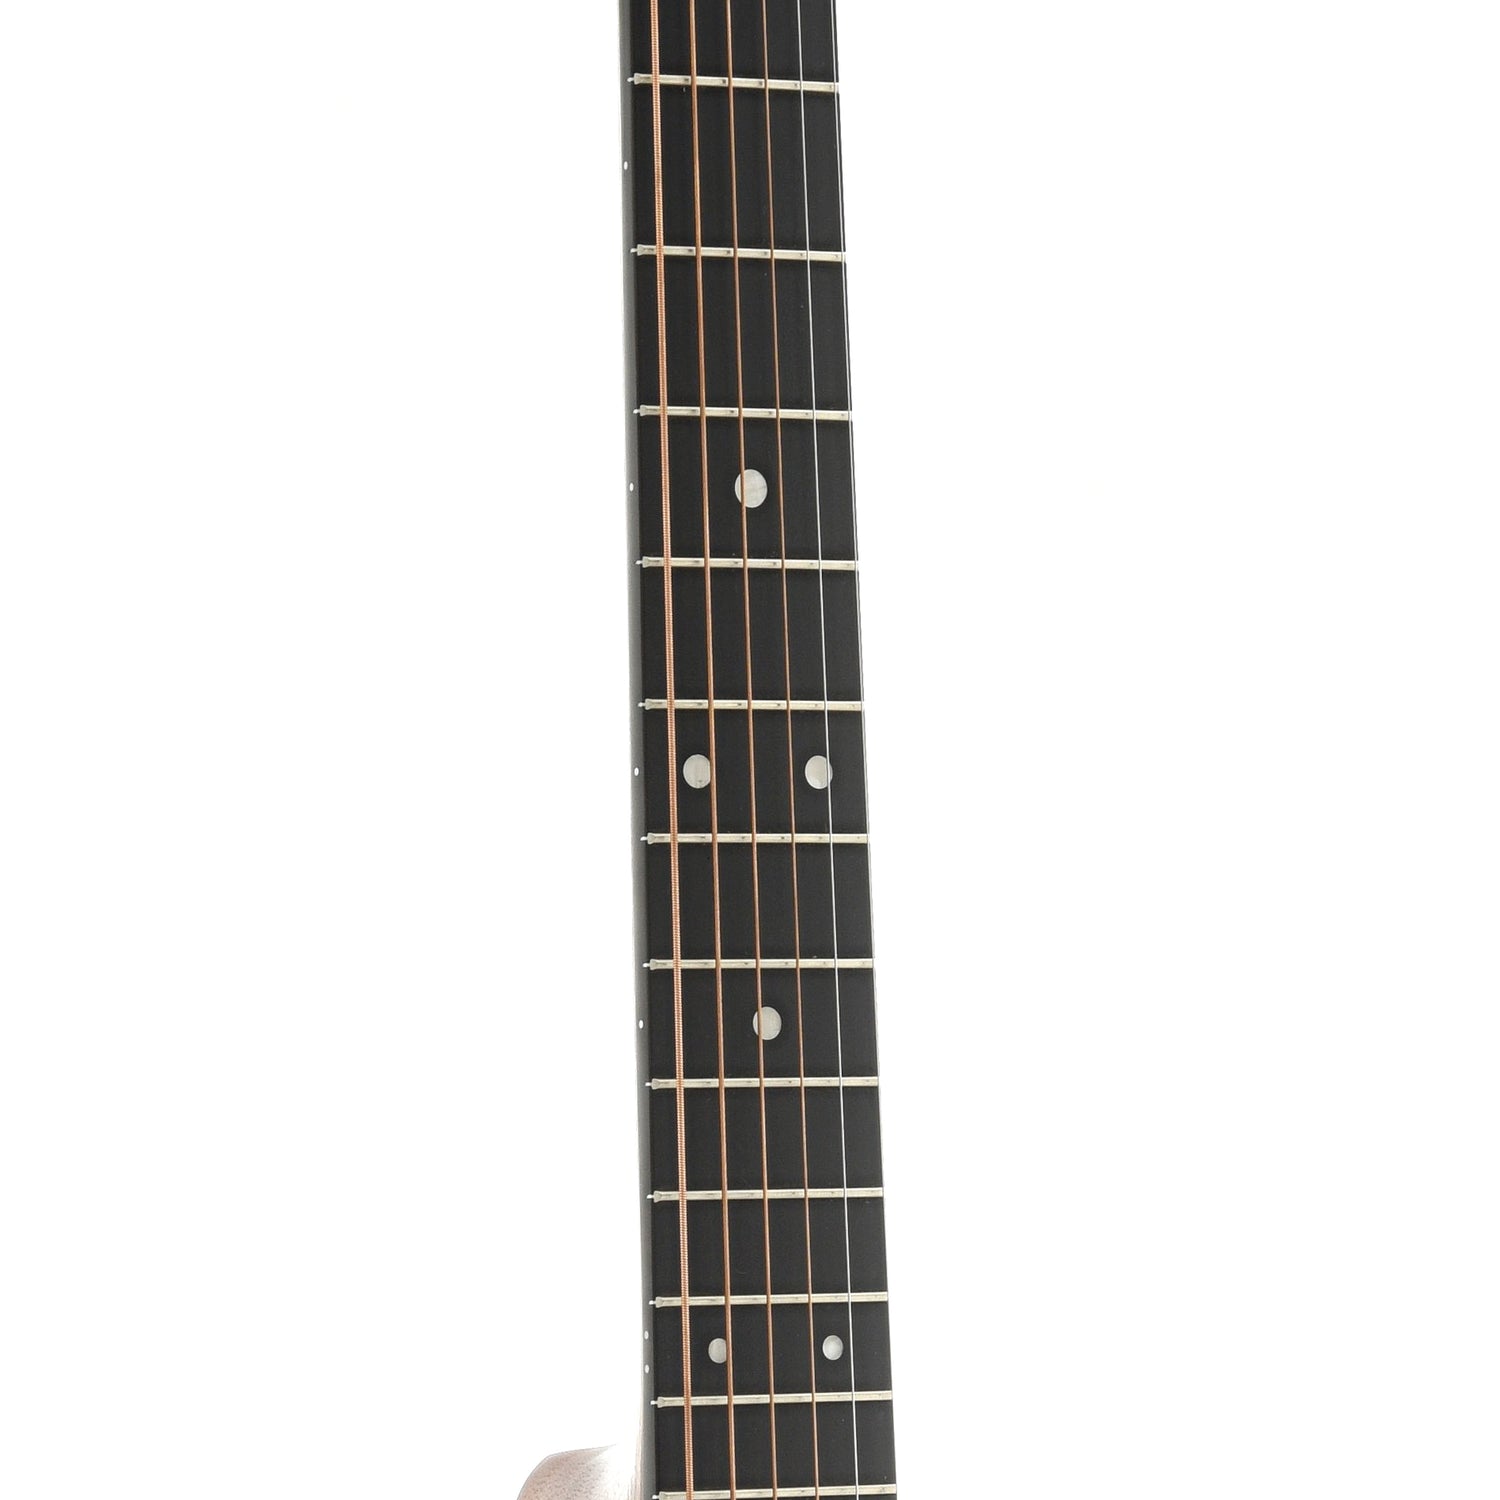 Fretboard of Martin 000-12E Koa Guitar